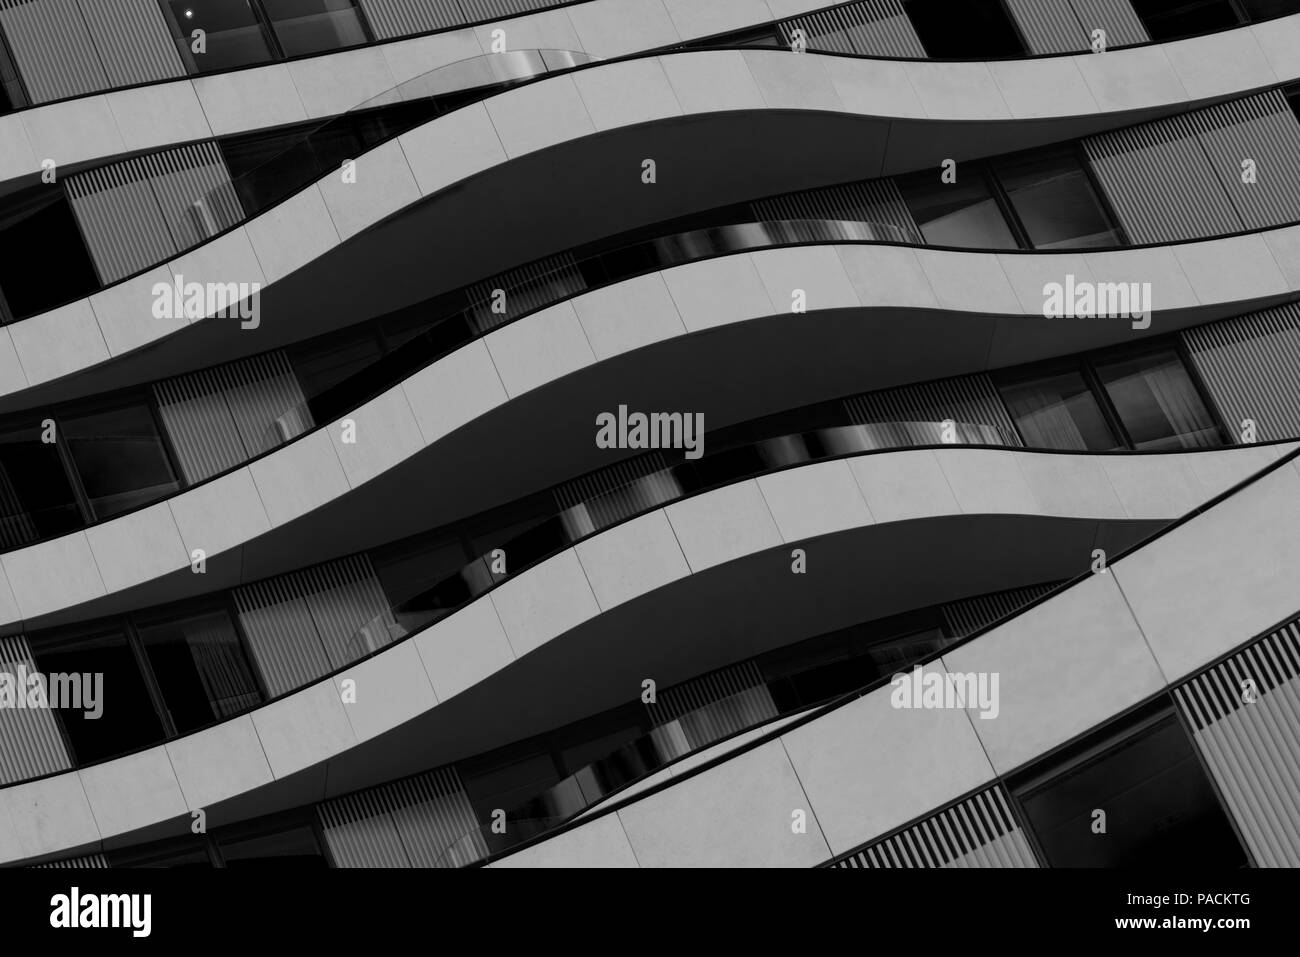 Londres, Royaume-Uni - 31 août 2017 : Façade d'un bâtiment moderne avec balcons en noir et blanc Banque D'Images